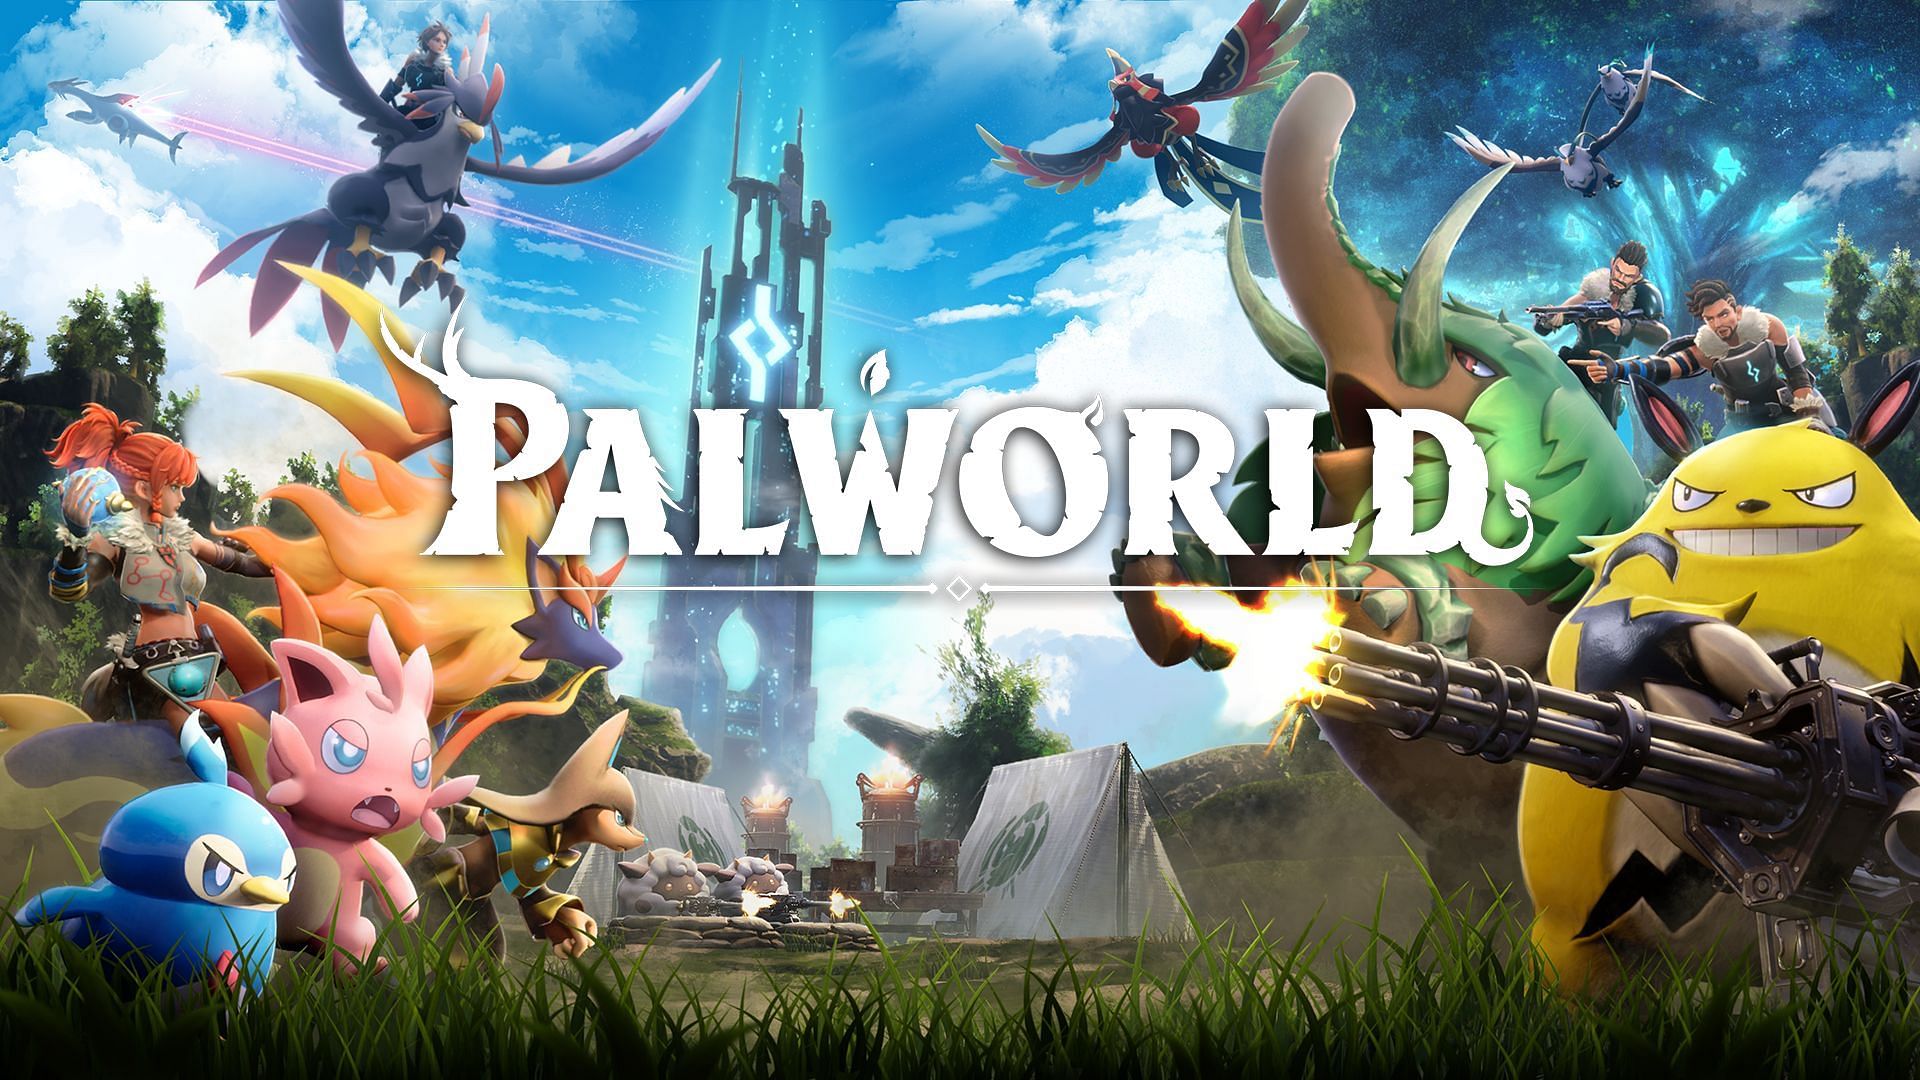 Palworld Tier List